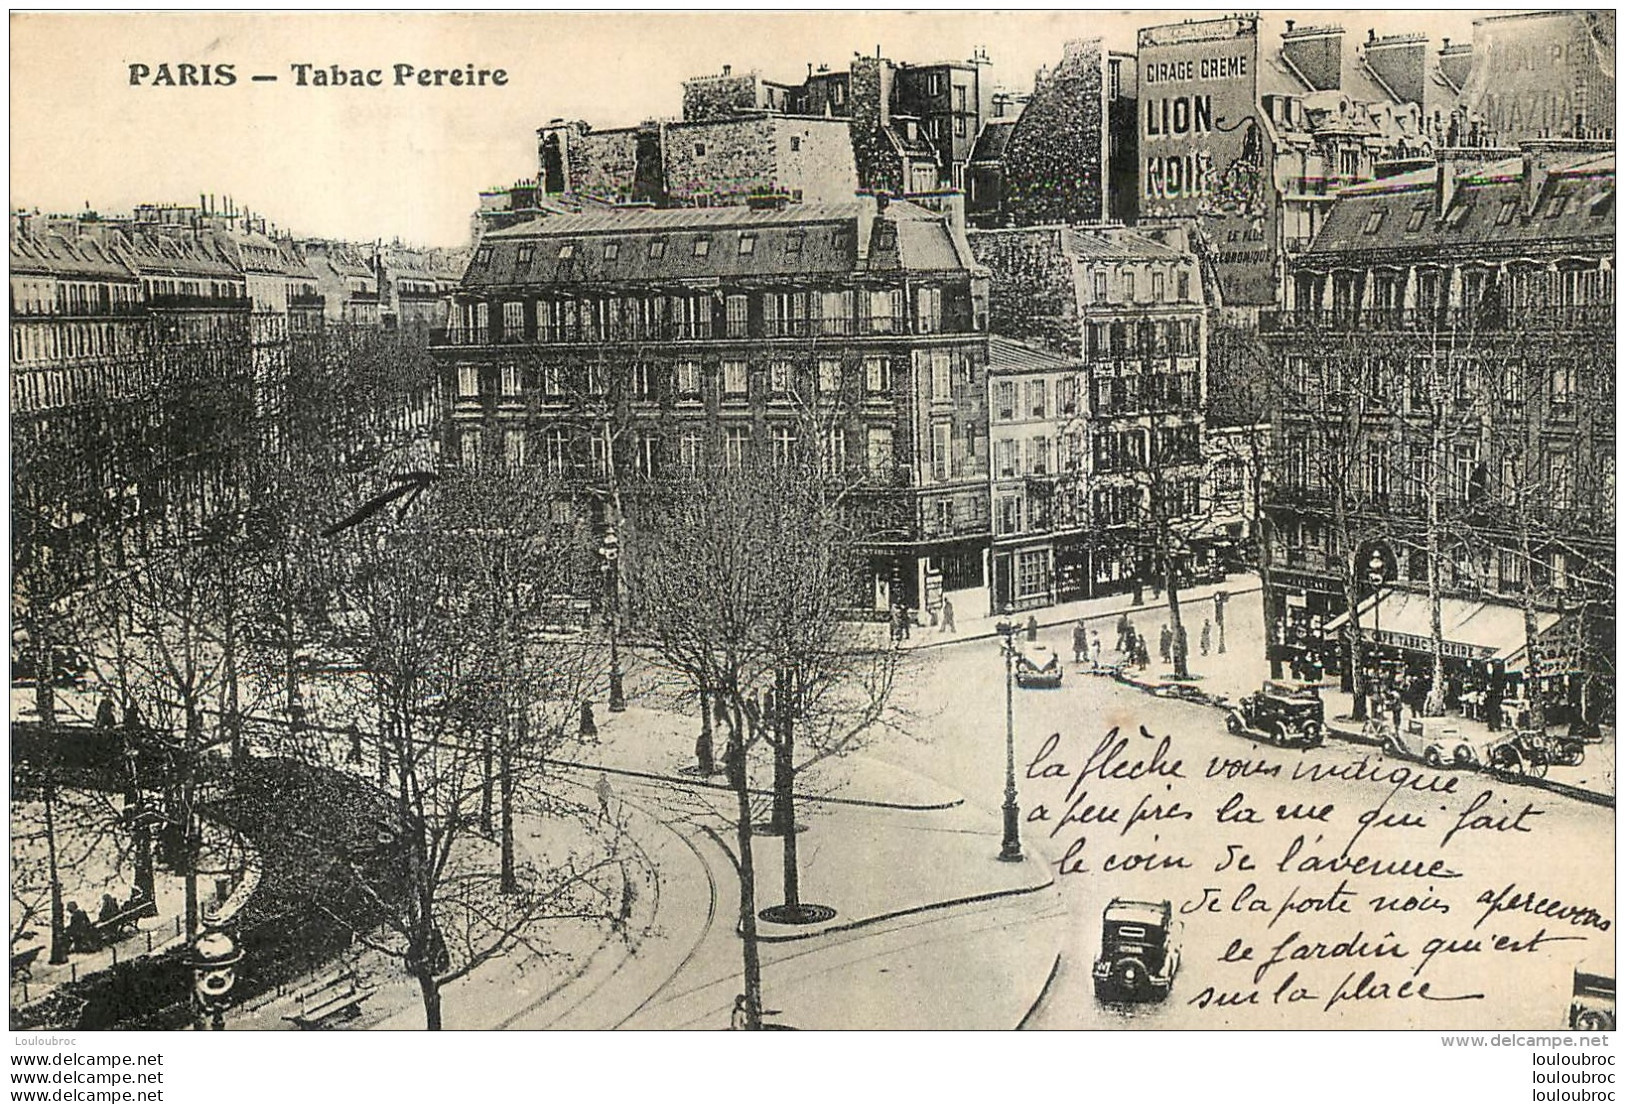 PARIS XVII TABAC PEREIRE - Arrondissement: 17